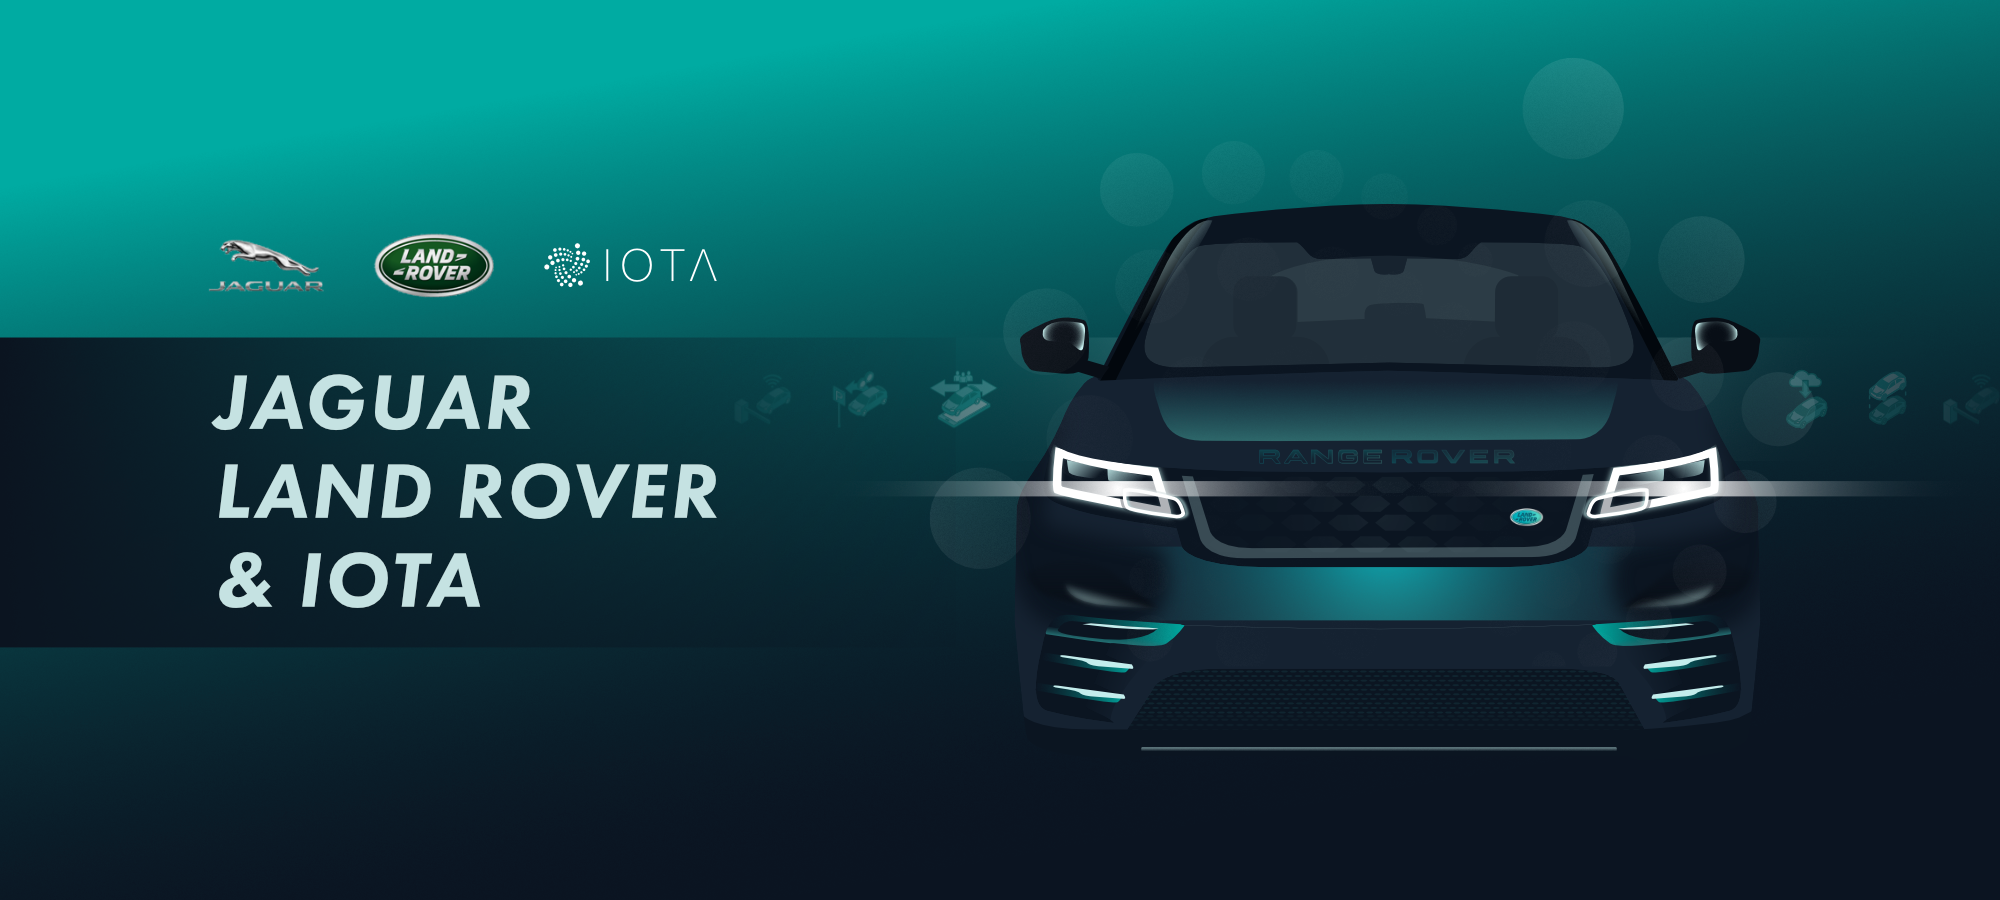 Цена IOTA резко выросла после заключения контракта с Jaguar Land Rover